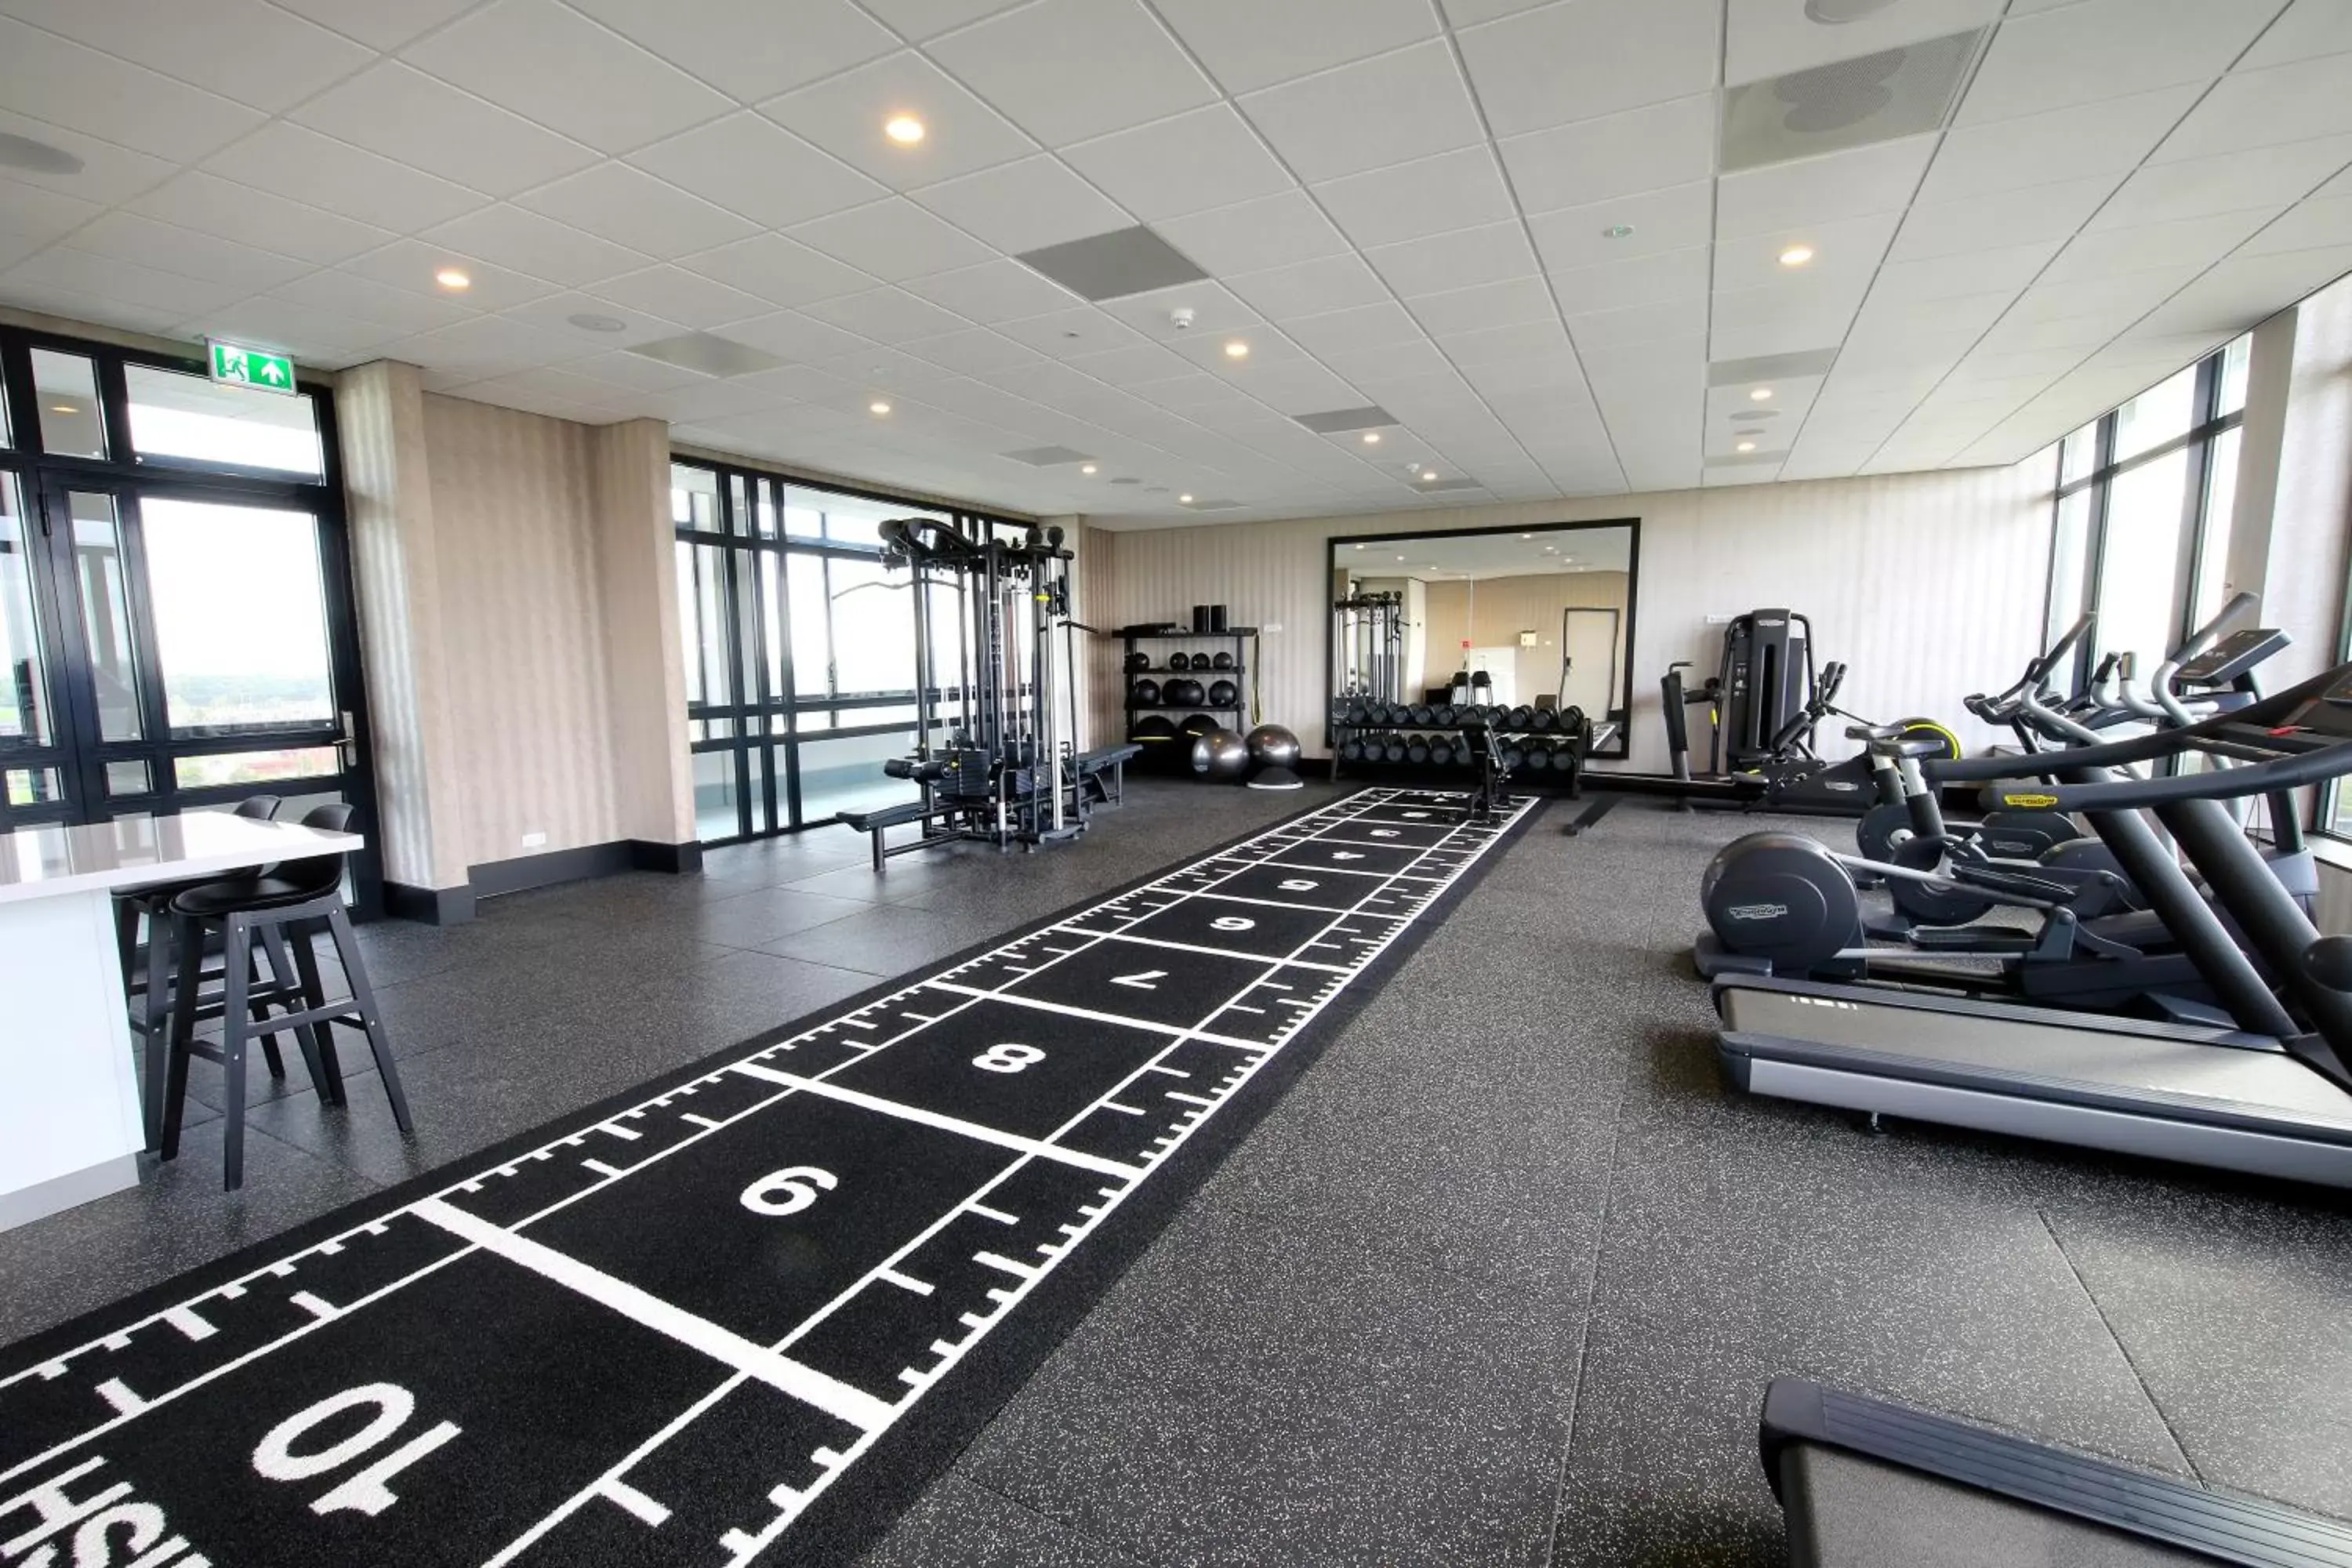 Fitness centre/facilities, Fitness Center/Facilities in Van der Valk Hotel Den Haag